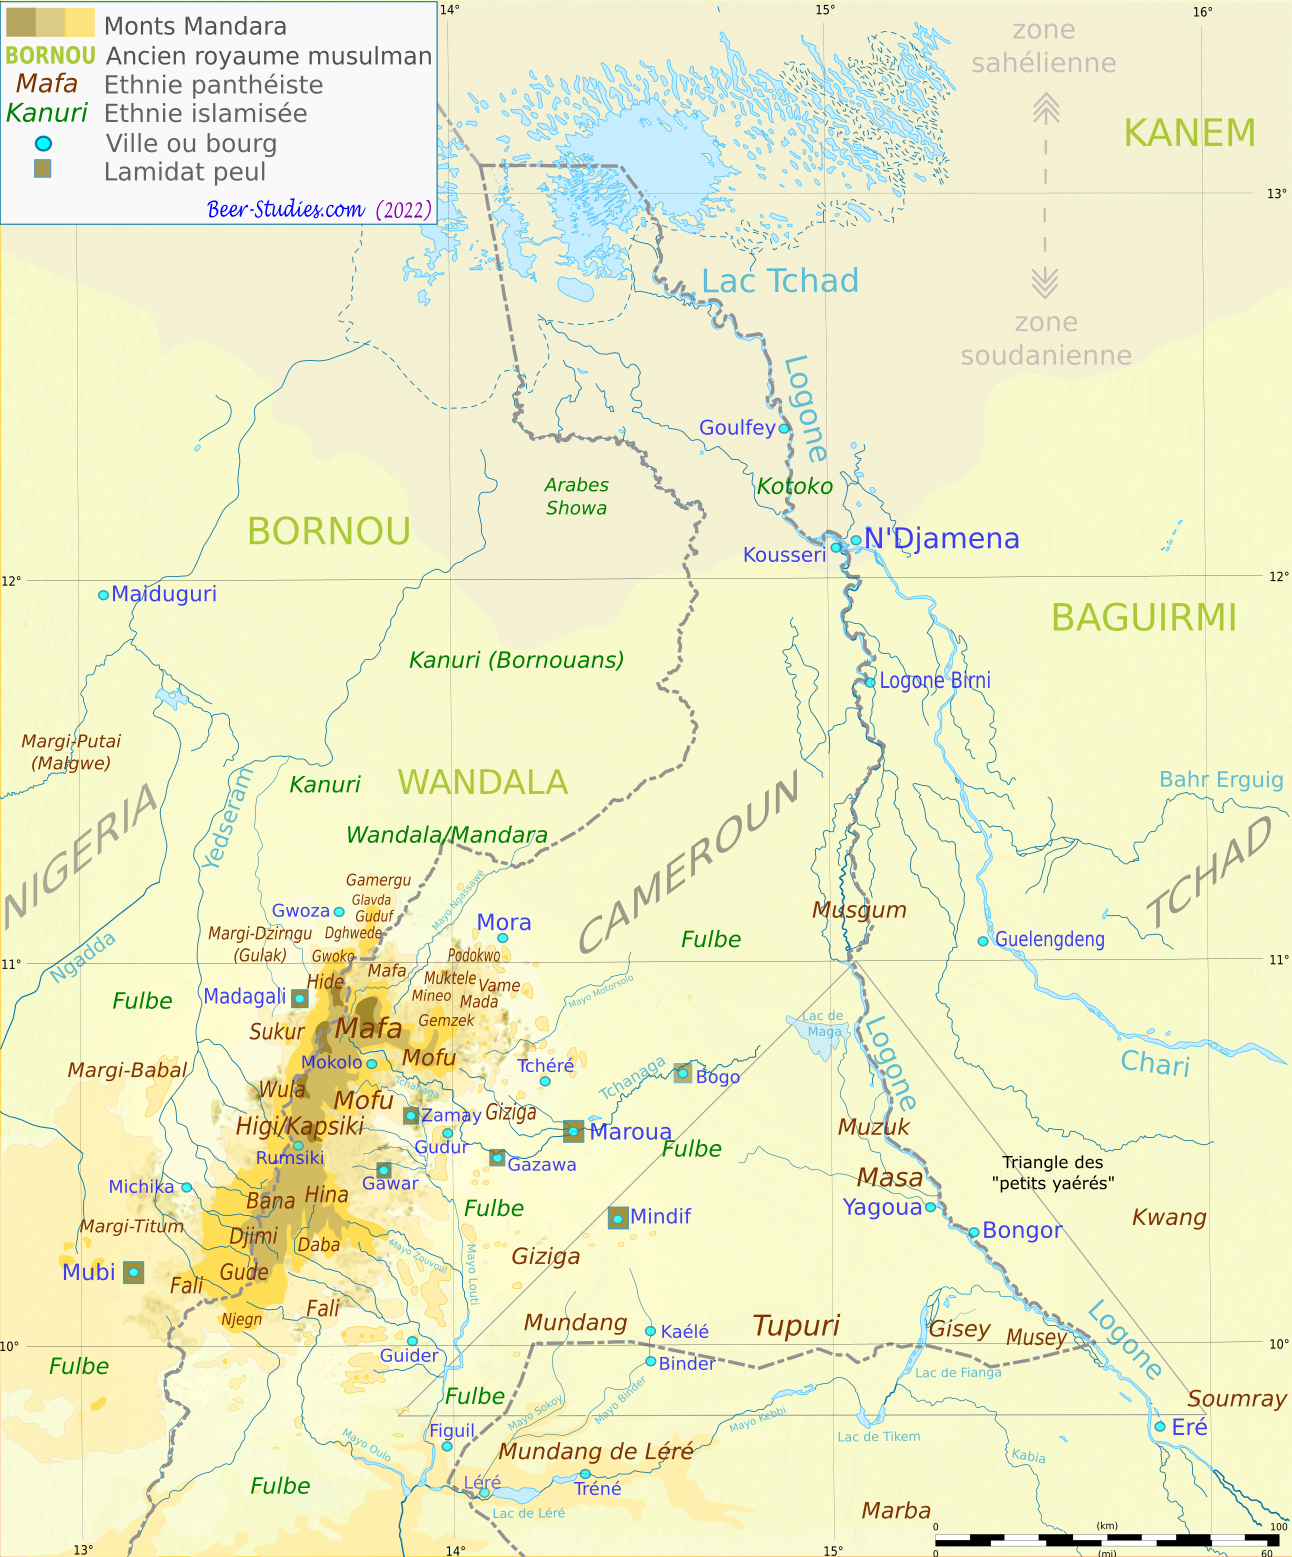 Ethnies panthéistes et islamisées (Nord-Est du Nigéria, Extrême-Nord du Cameroun, Ouest du Tchad)